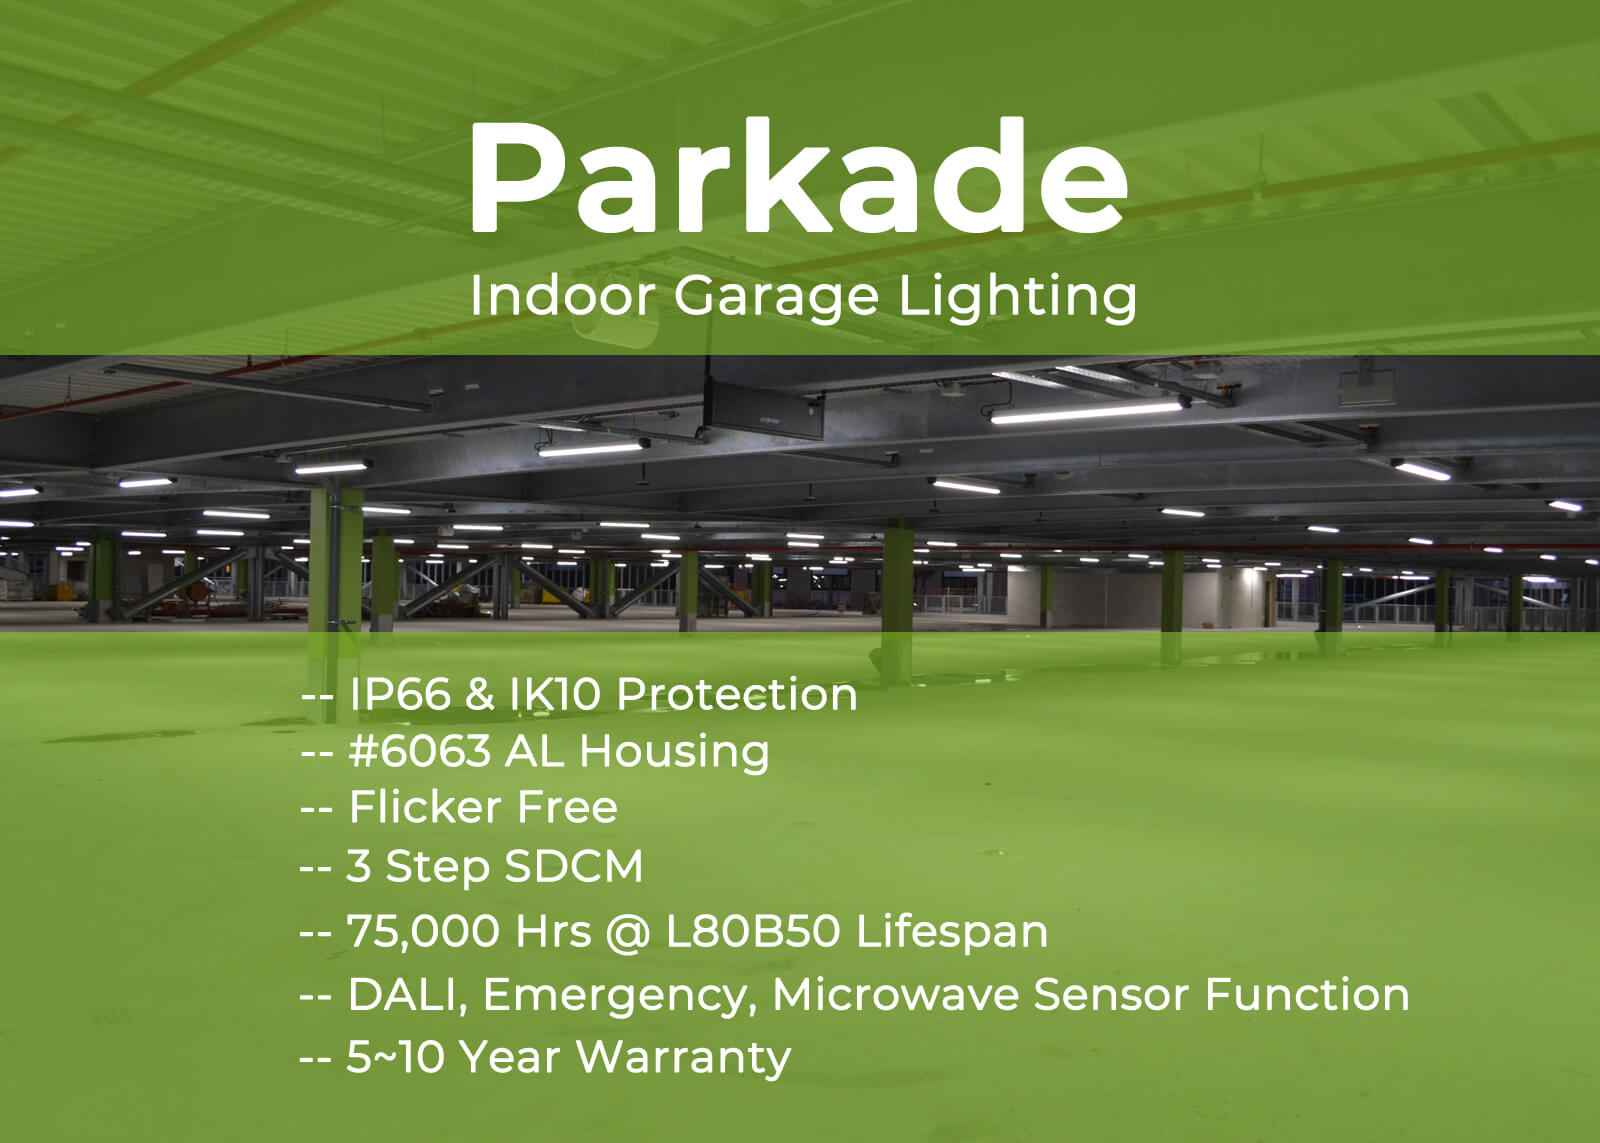 Indoor Garage Lighting post image